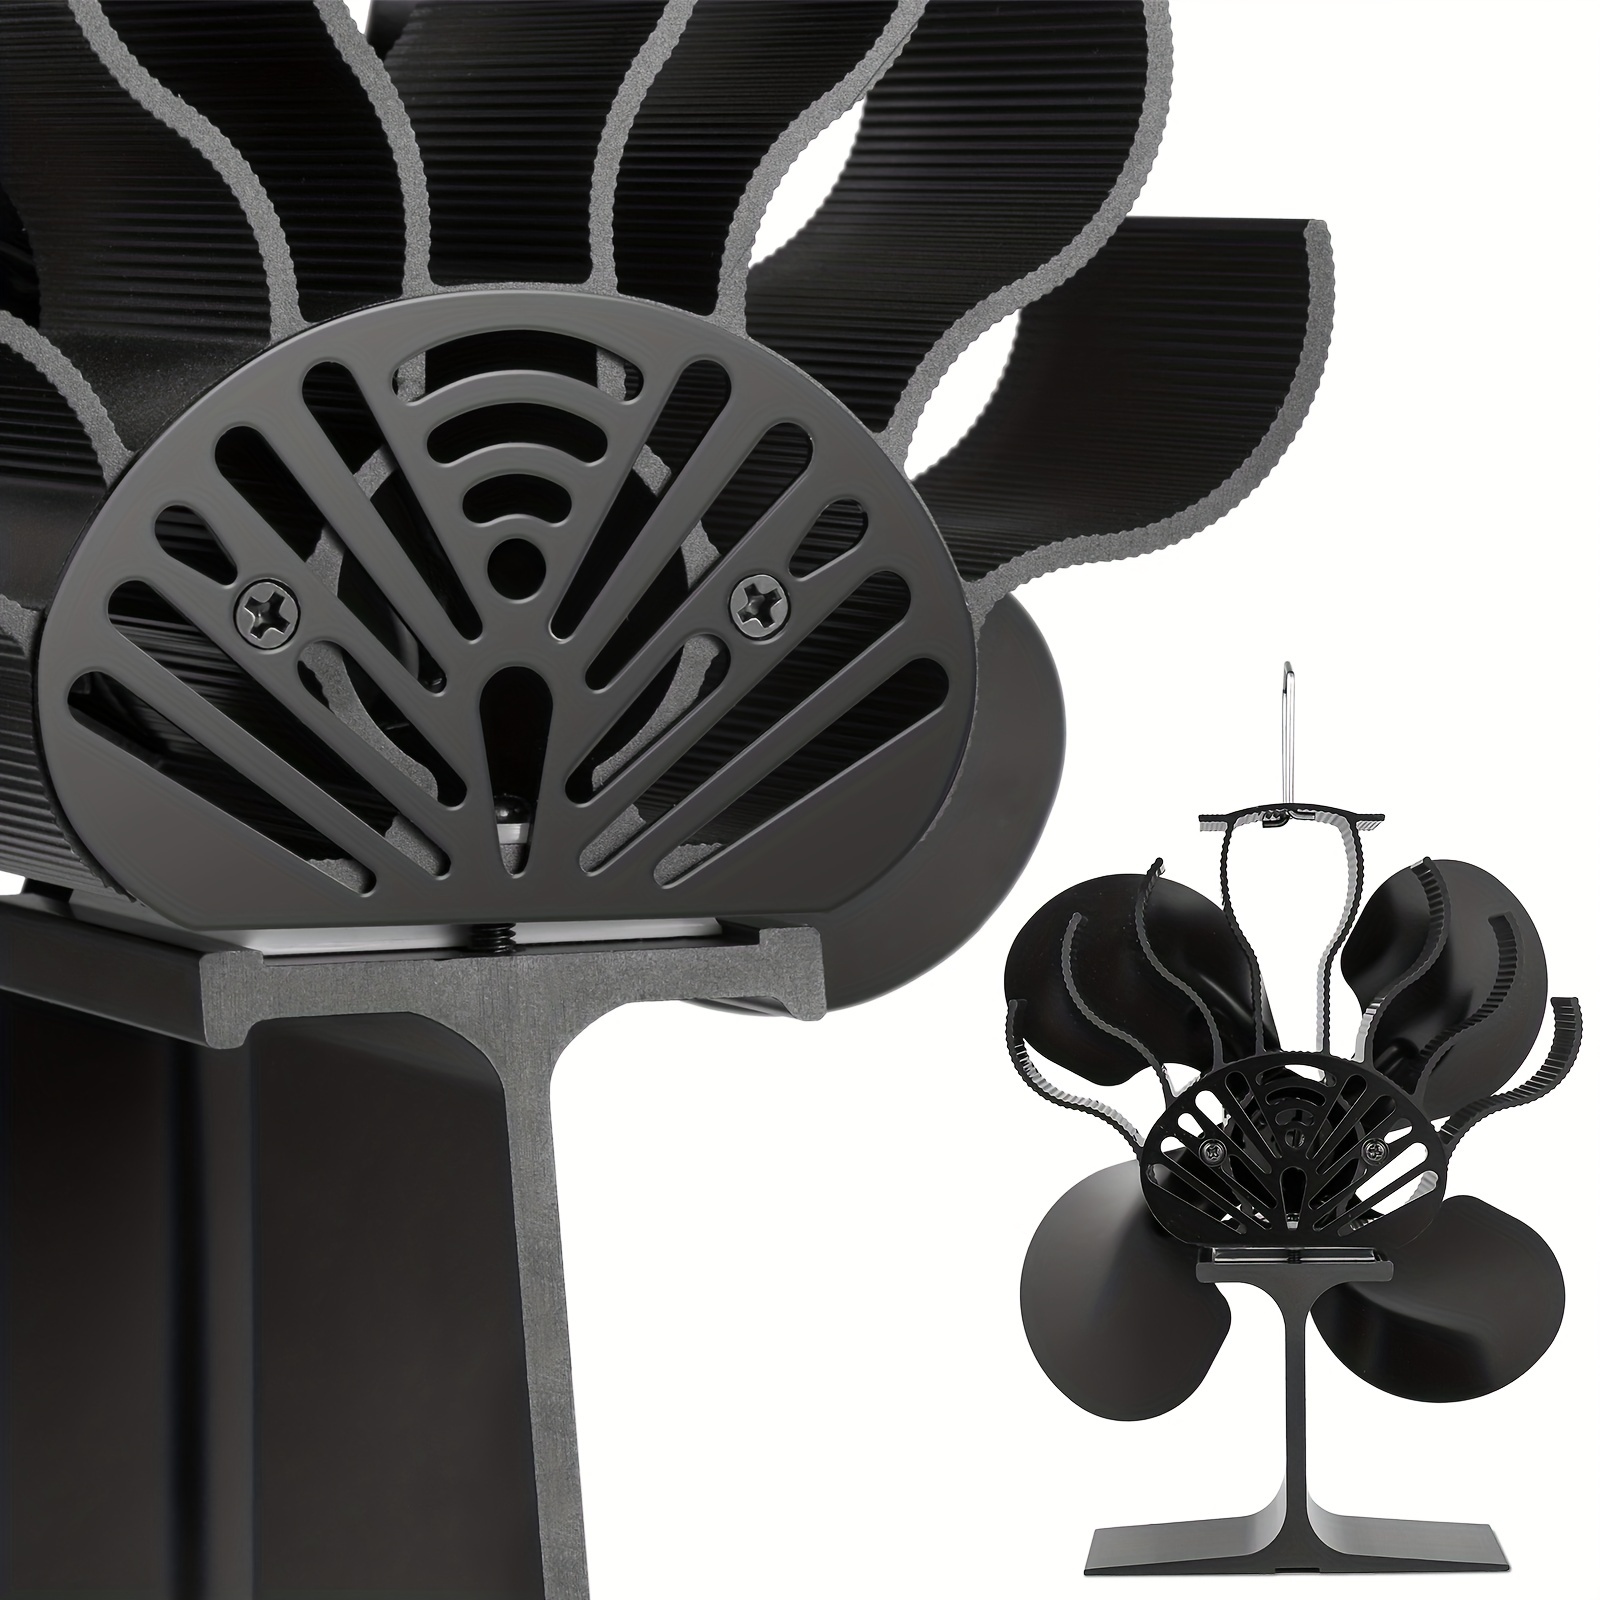 Buy 1350RPM 4 Leaves Stove Fan Heat Powered Motor Energy Saving Fireplace  EcoFan Kit by Just Green Tech on Dot & Bo